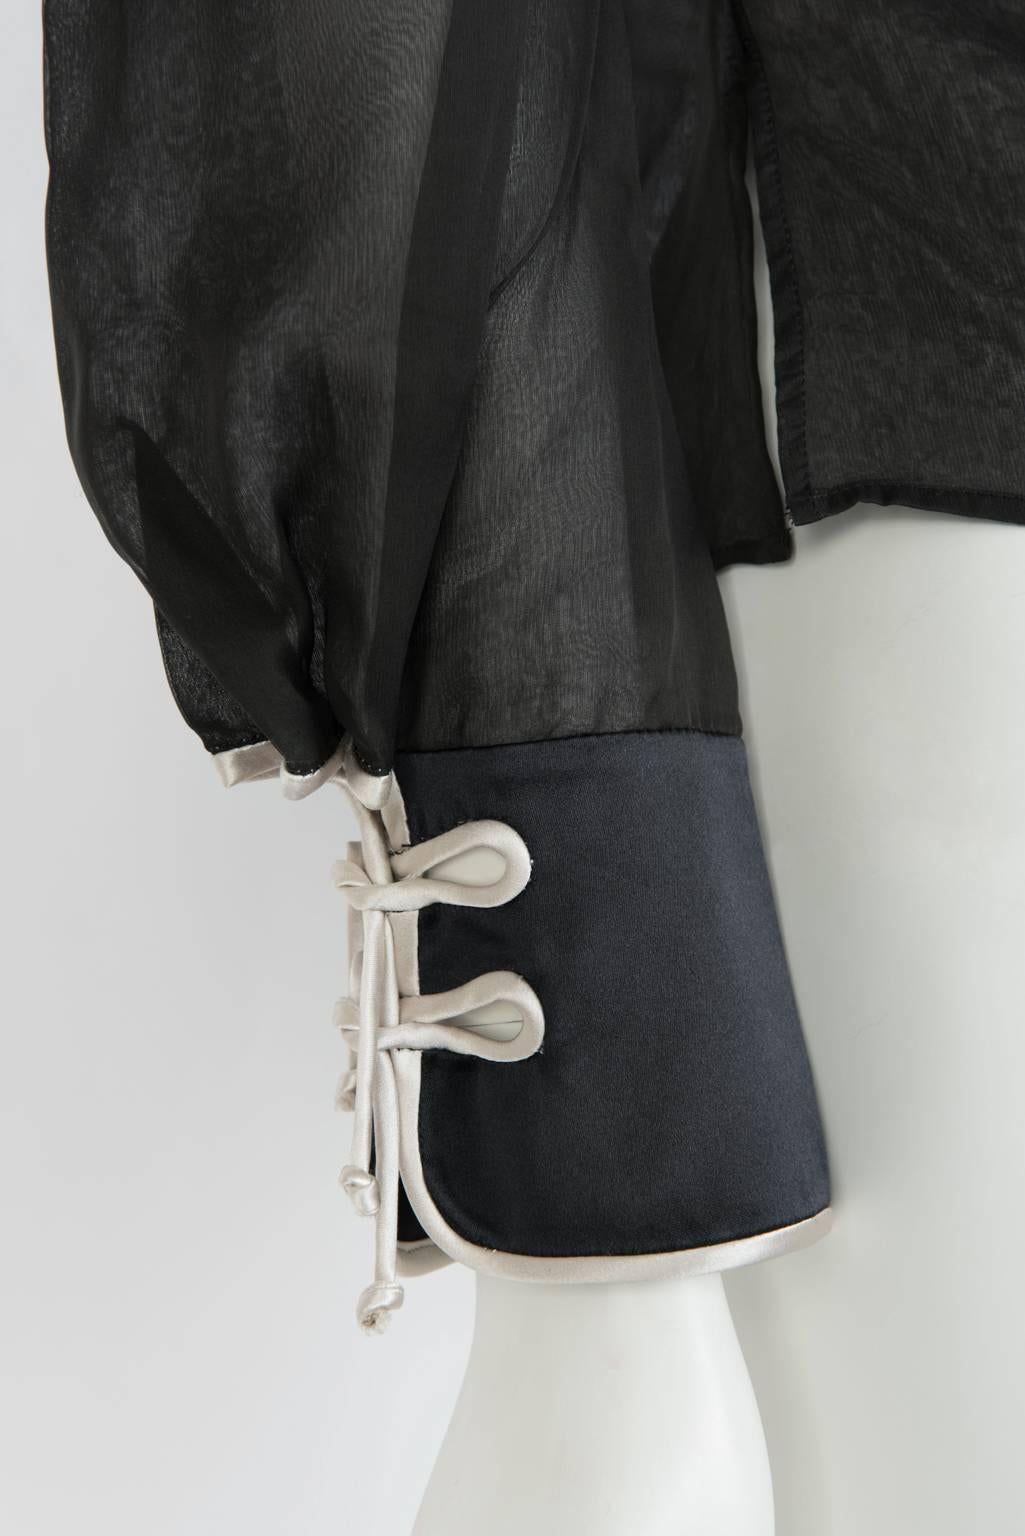 Yves Saint Laurent Silk Victorian Inspired Blouse 2